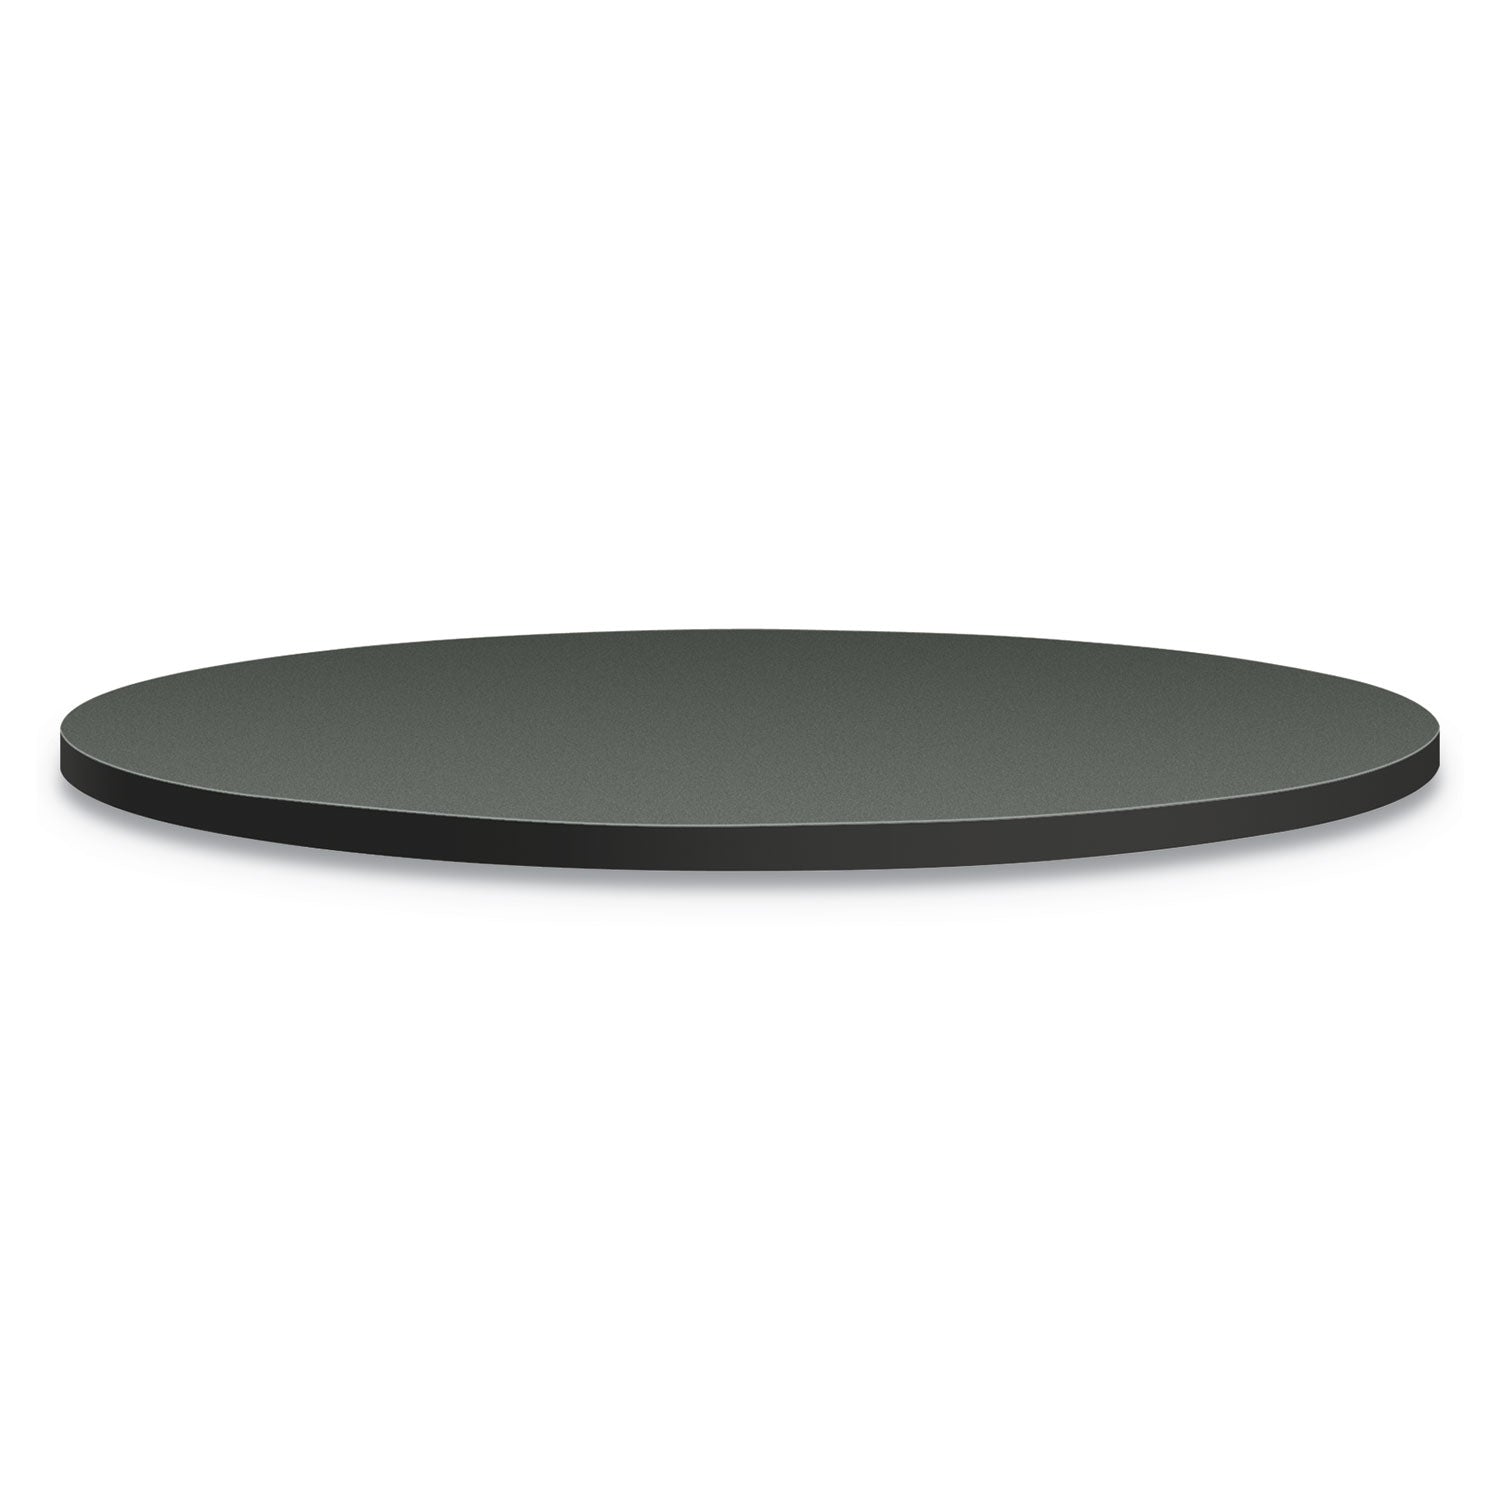 between-round-table-tops-42-diameter-steel-mesh-charcoal_honbtrnd42na9s - 1